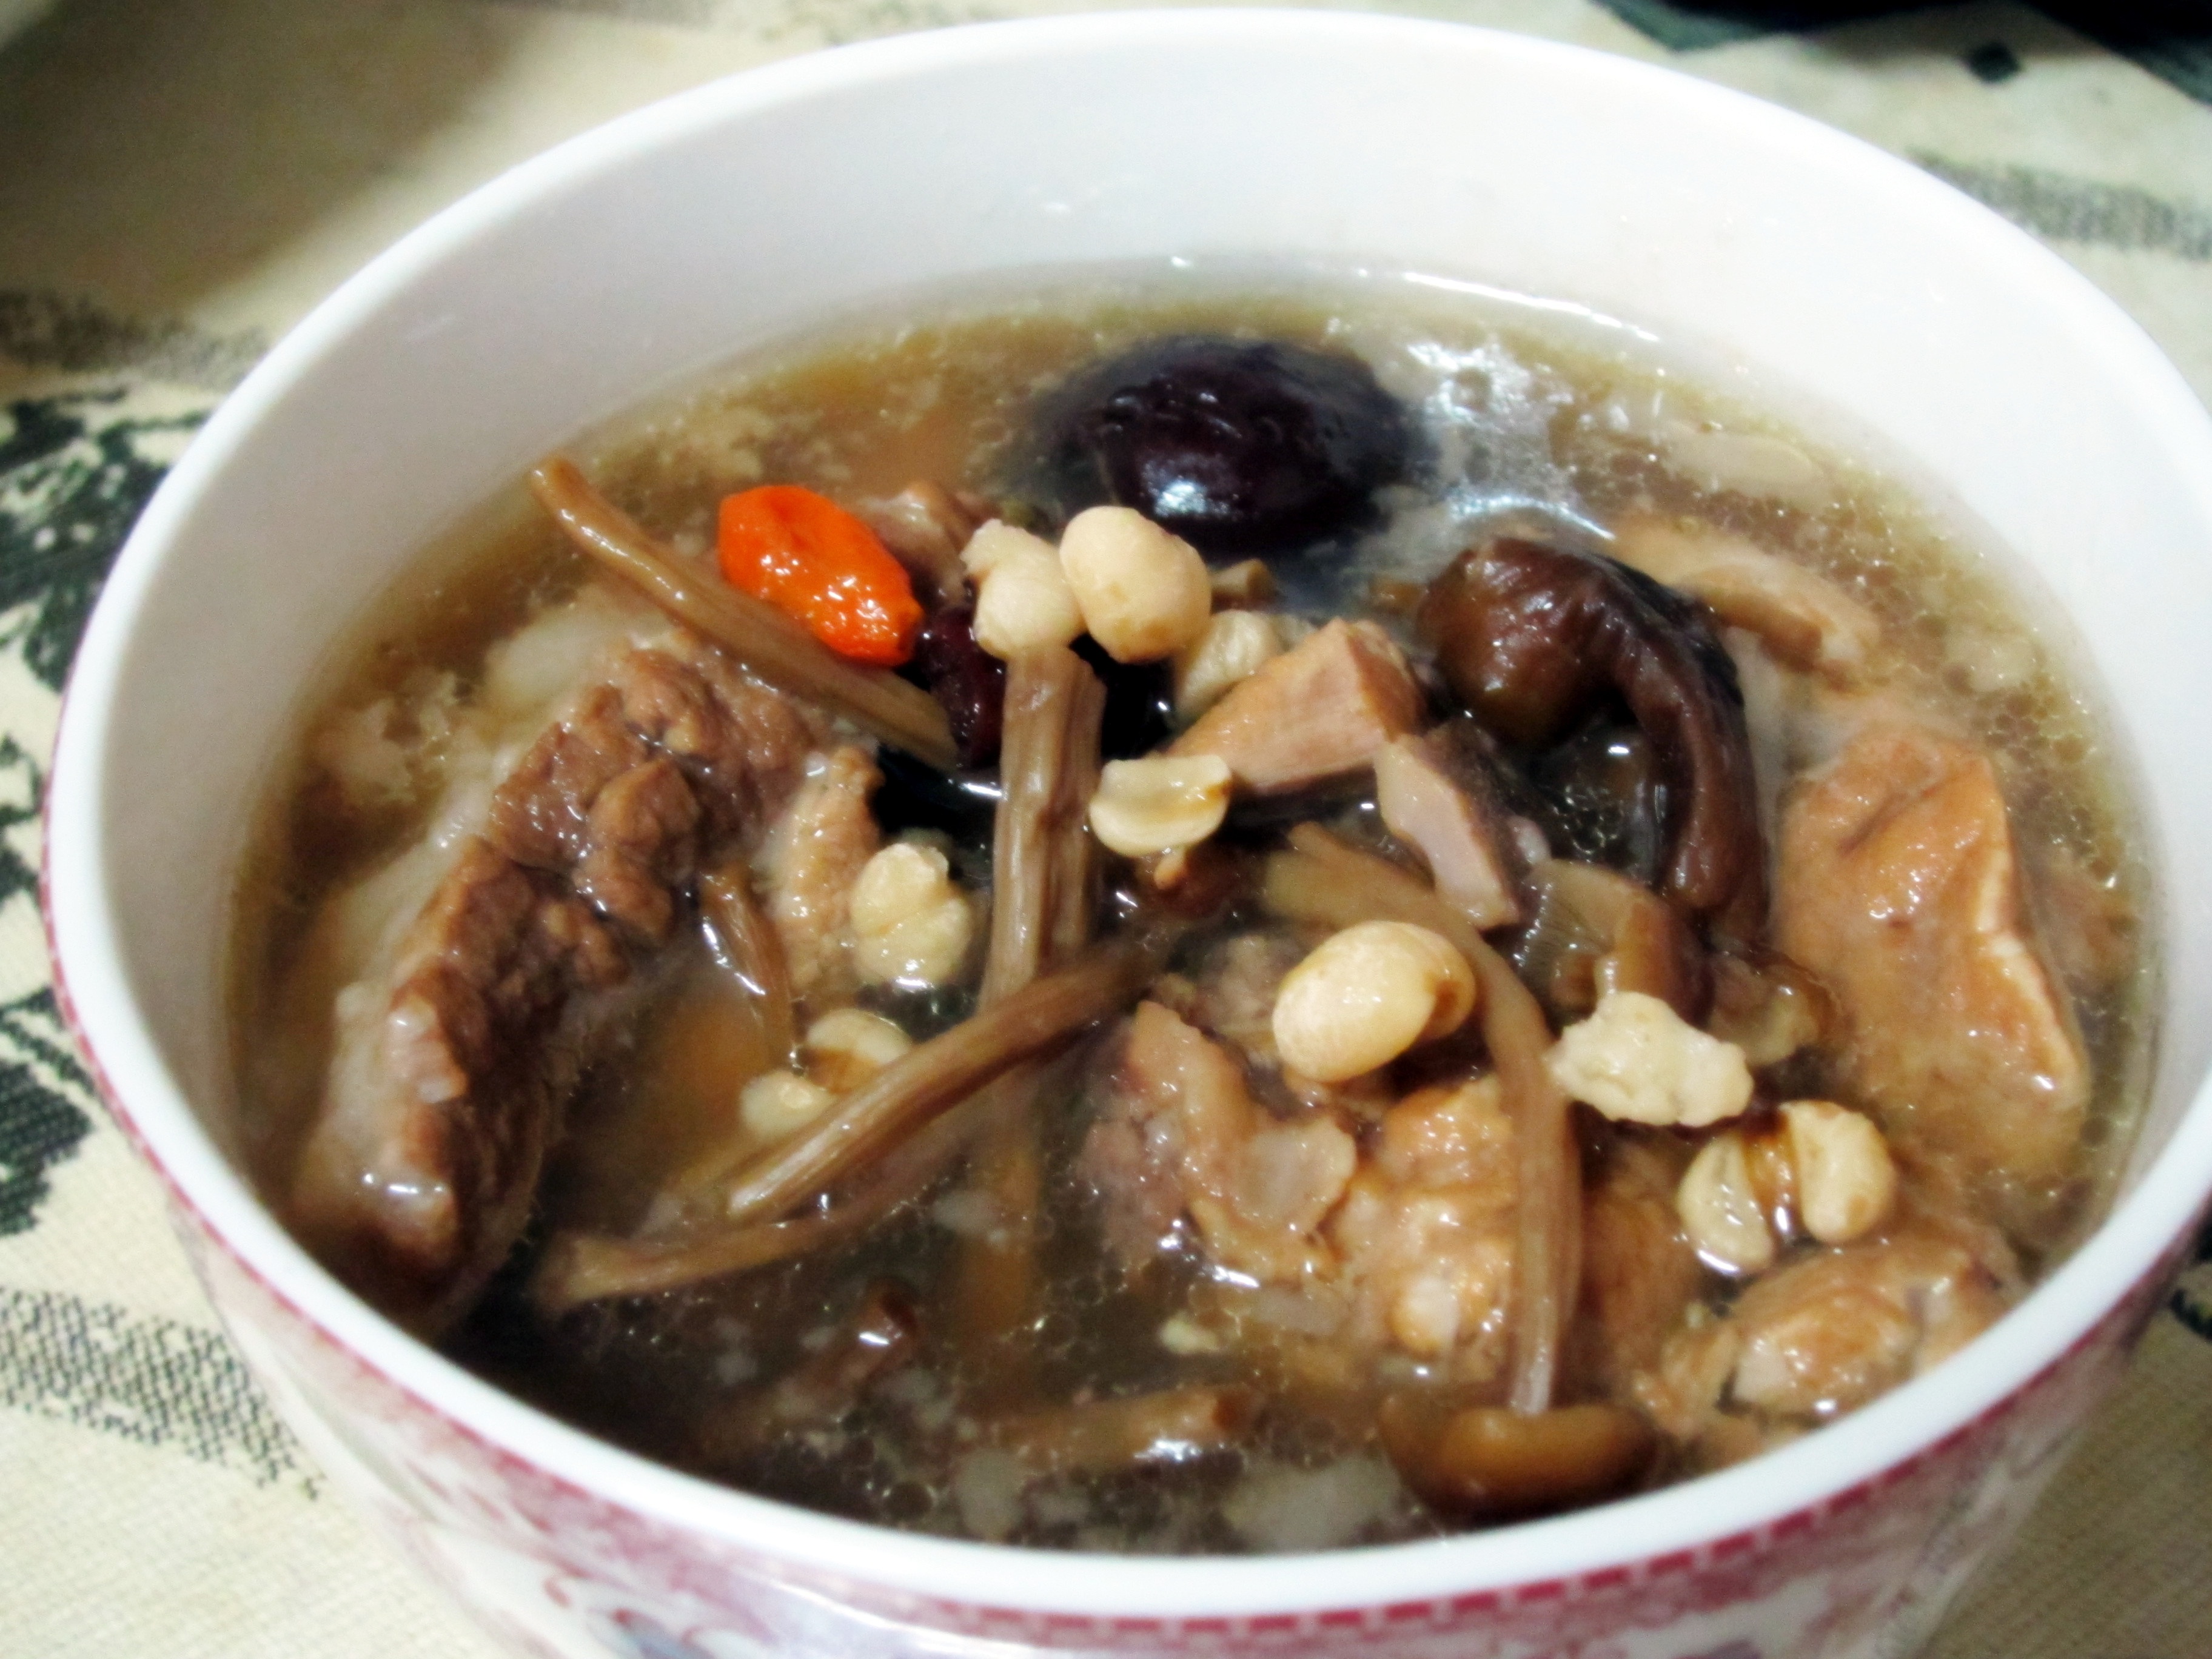 薏米茶树菇排骨汤